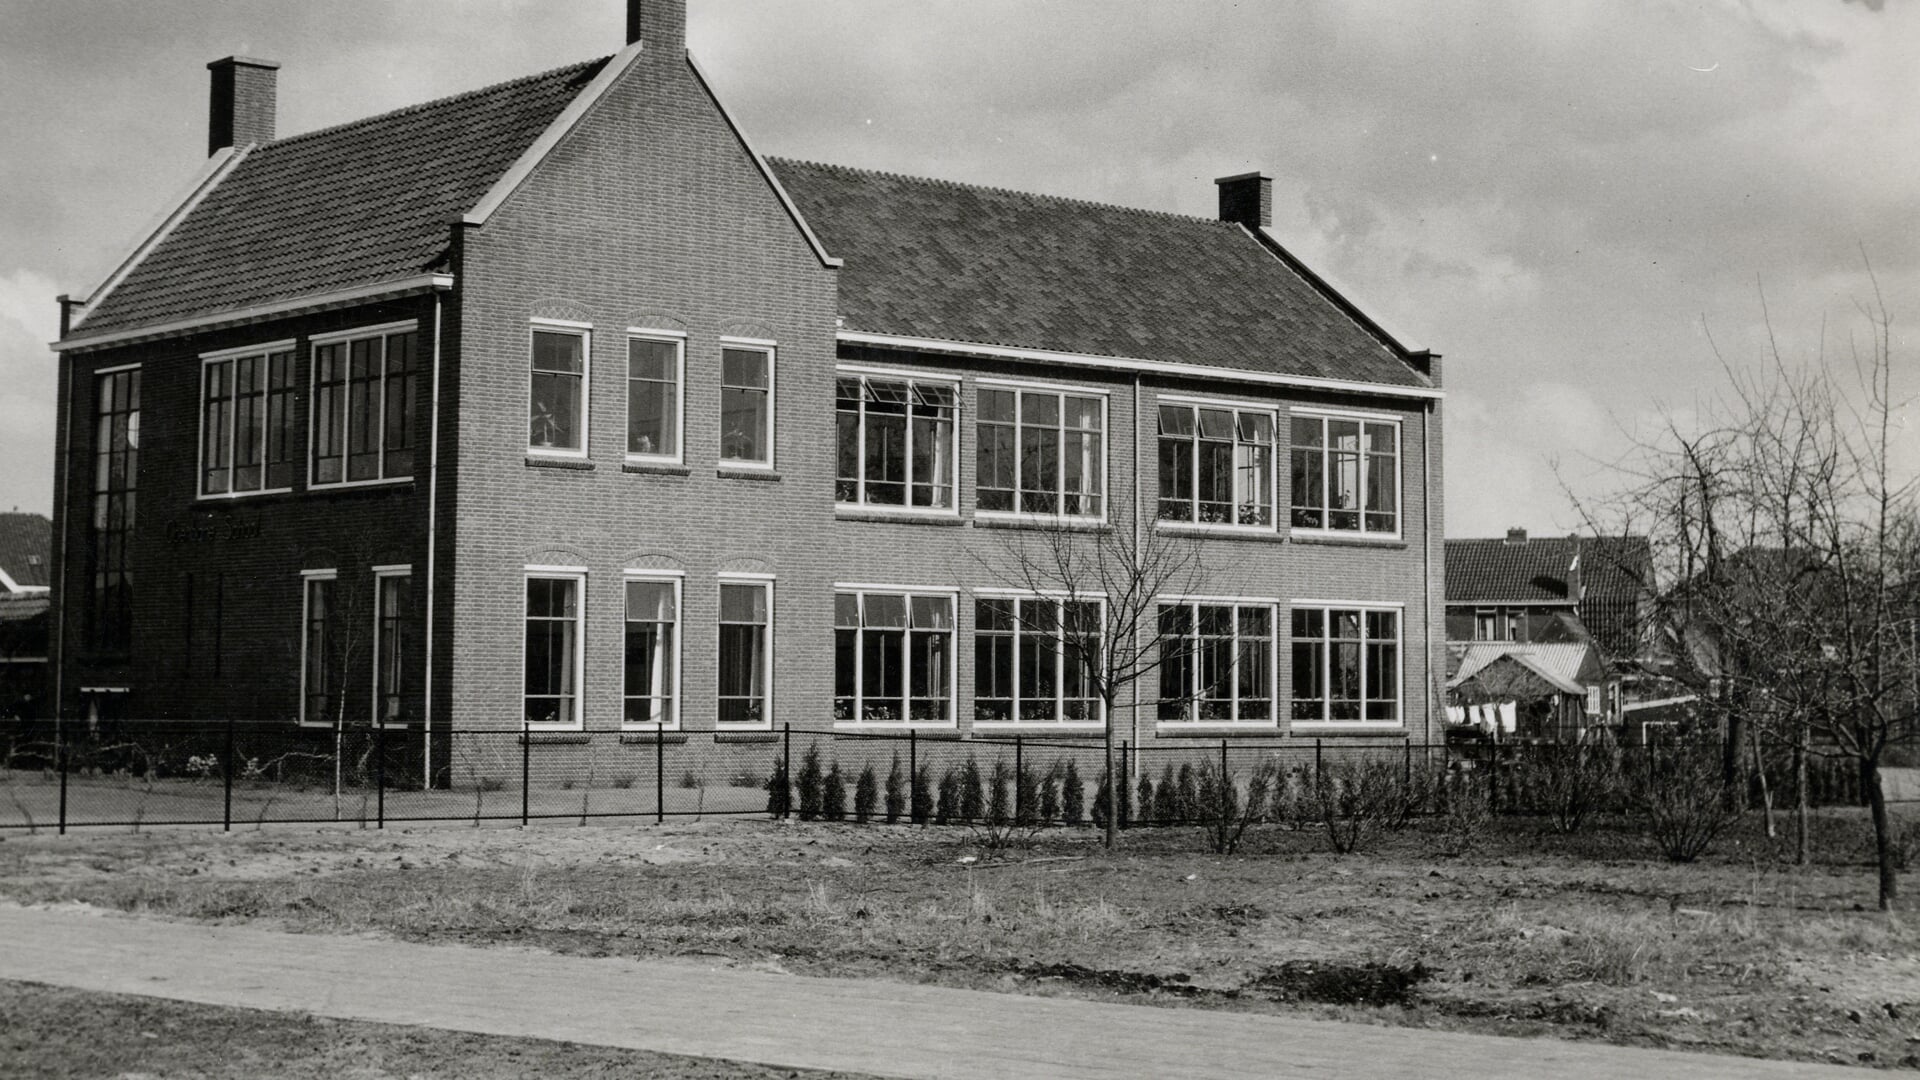 De Openbare school de Hemmelgaard, deze naam werd in 2001 vervangen door De Touwladder, die in 2005 officieel Daltonschool werd.